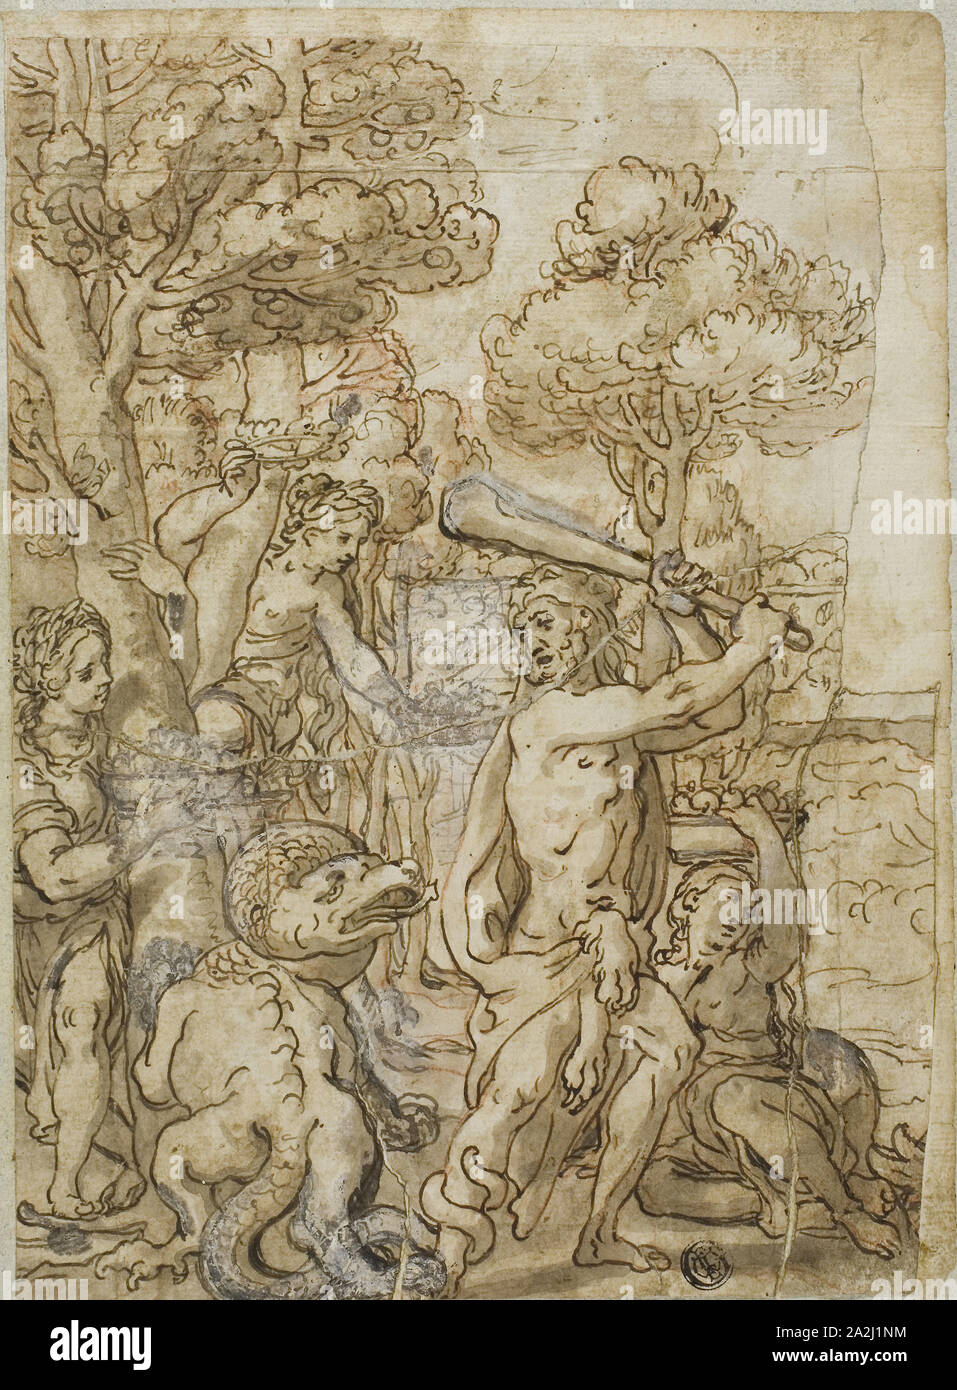 Hercule terrassant le serpent Ladon dans le jardin des Hespérides, n.d., Andrea Lilio (italien, 1555-1642), ou Lazzaro Tavarone (italien, 1556-1641), ou le style de Pietro da Cortona (italien, 1596-1669), l'Italie, plume et encre brune avec pinceau et lavis, avec le blanc de plomb (décolorée), plus de craie rouge, sur papier vergé ivoire, fixées sur papier vergé ivoire, fixées sur papier vergé bleu, 246 x 180 mm Banque D'Images